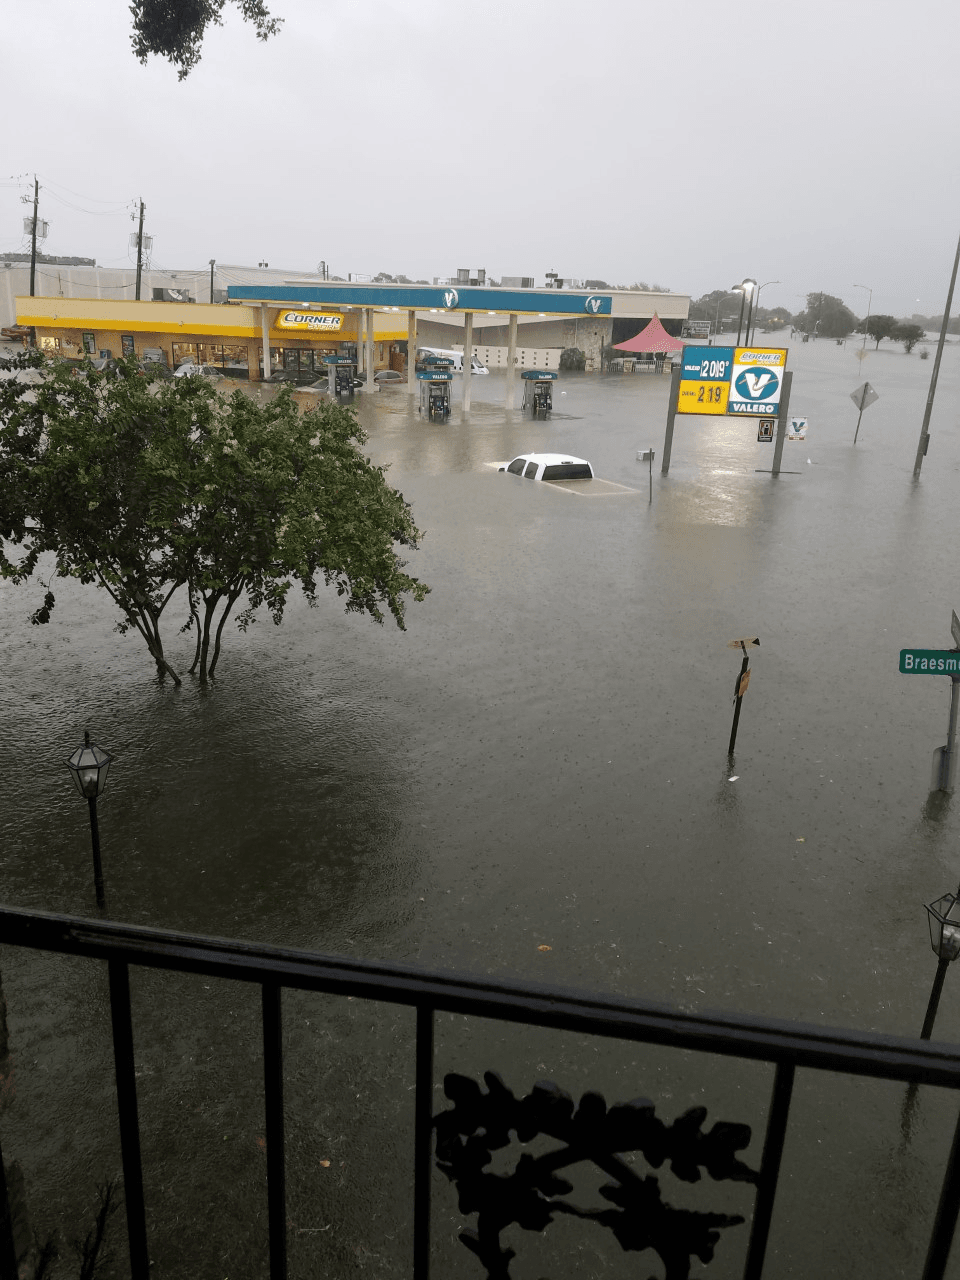 The Houston neighborhood of Meyerland during Hurricane Harvey.